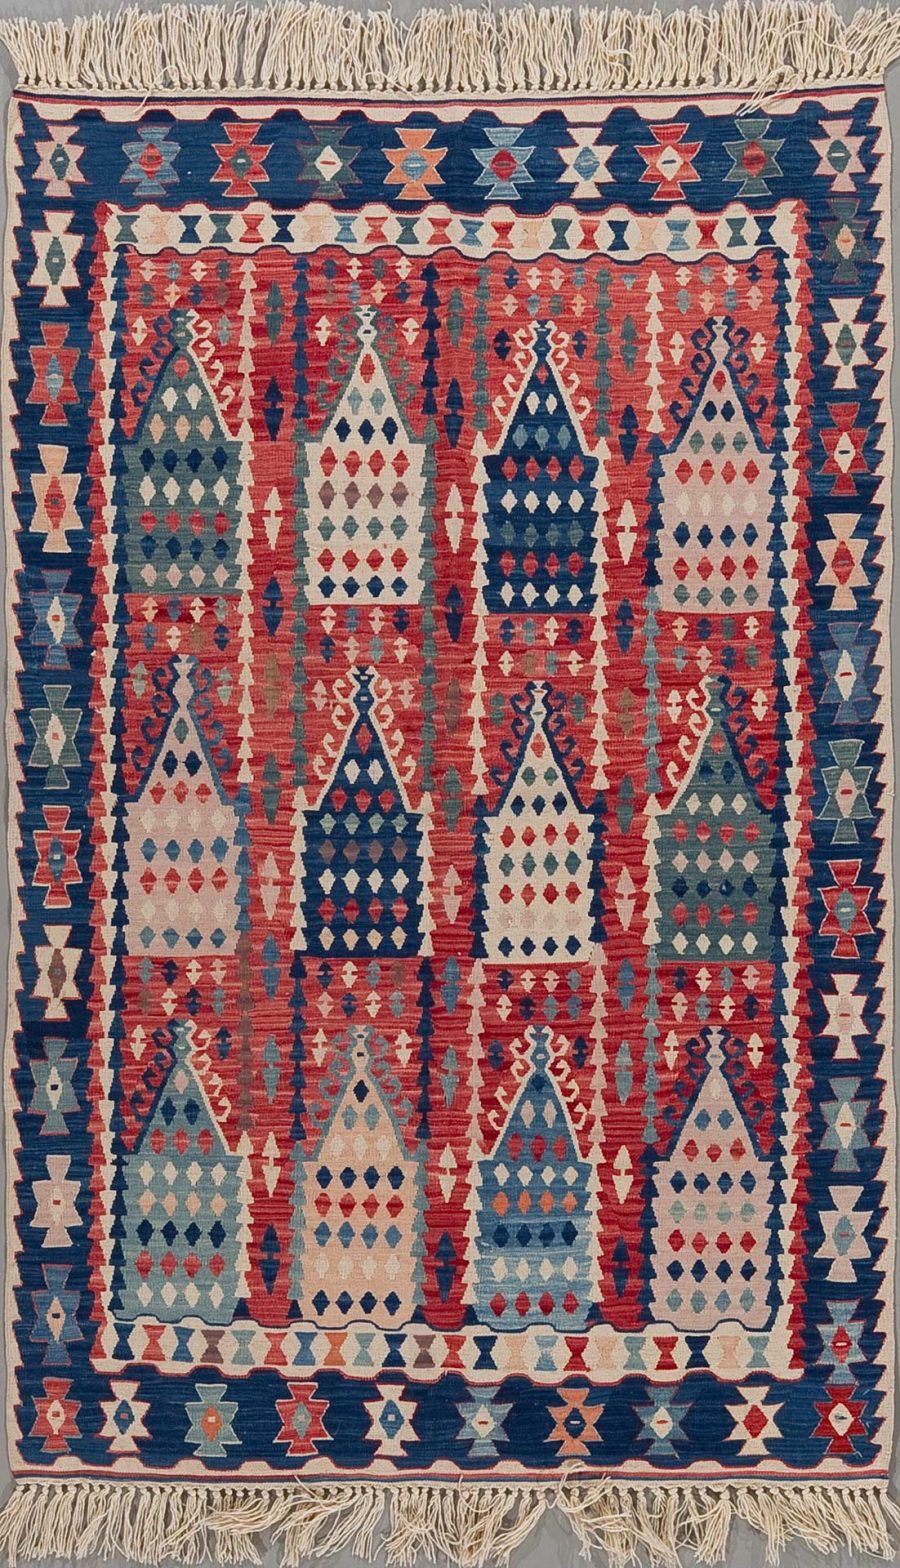 Traditioneller handgewebter Teppich mit komplexem geometrischem Muster in Rot-, Blau-, Weiß- und Beigetönen mit Fransen an den Enden.